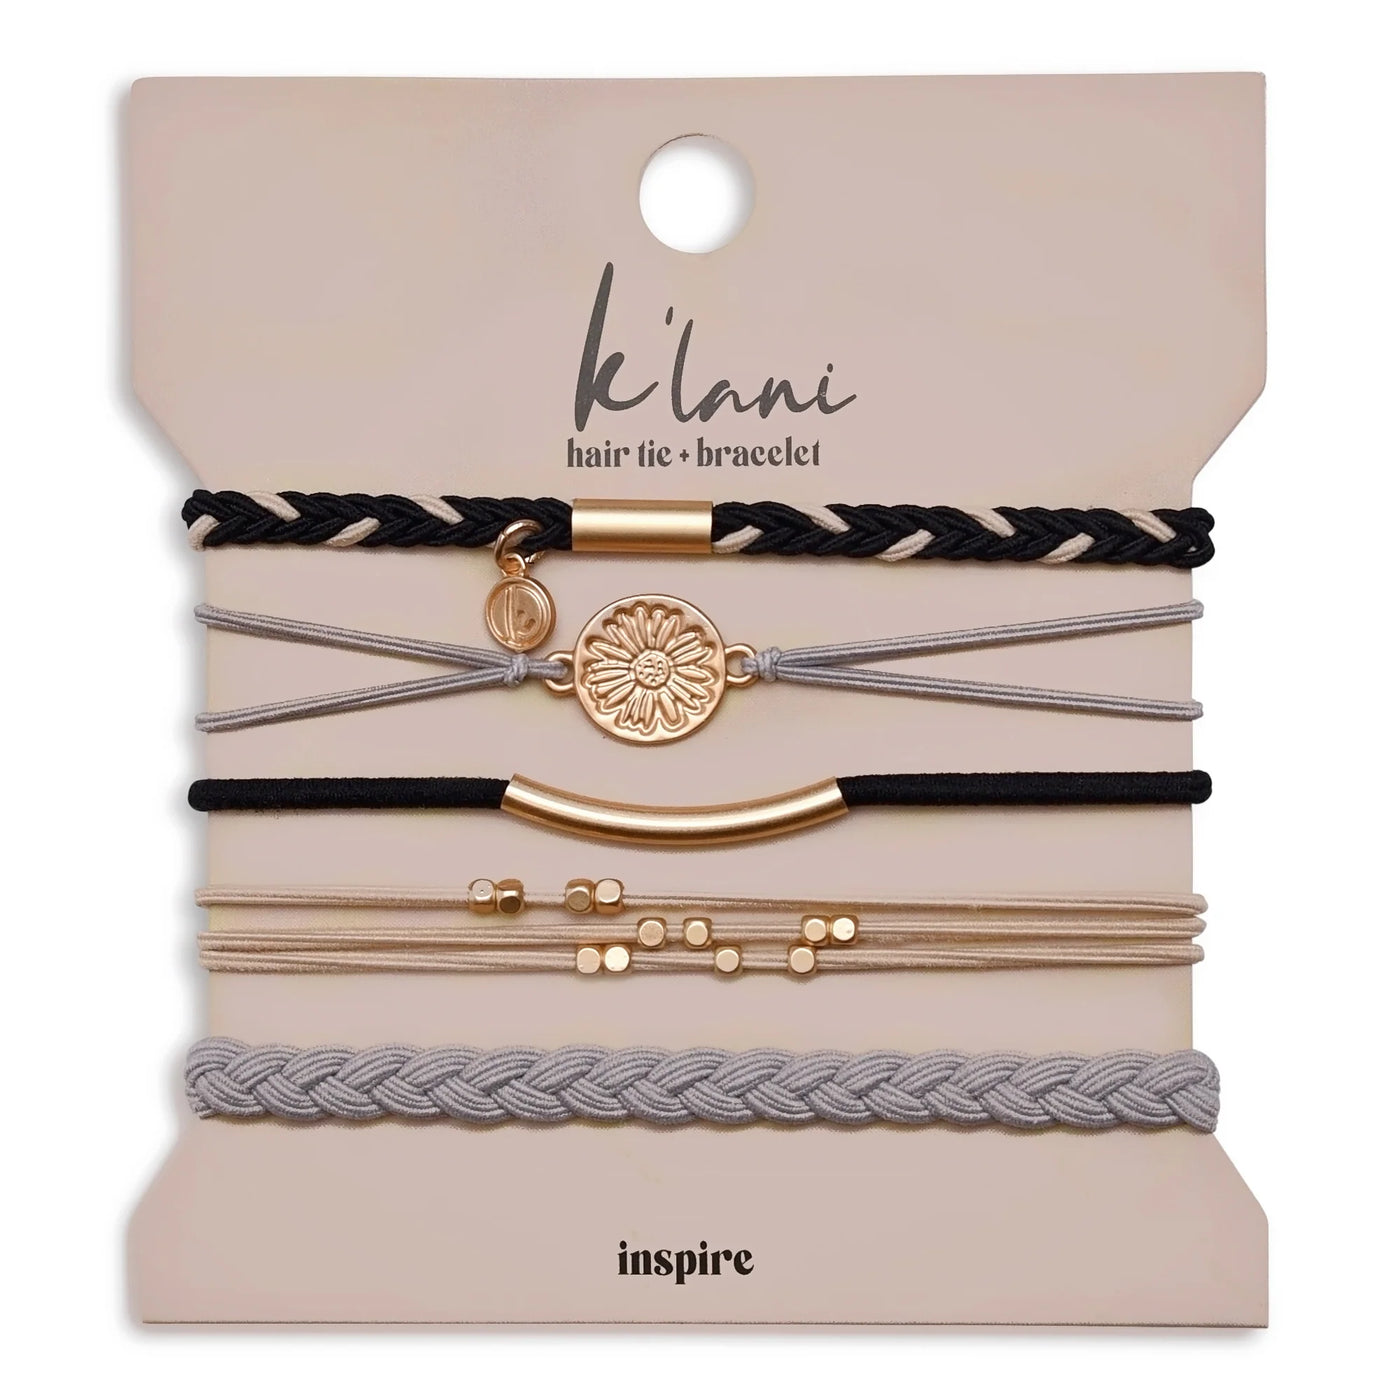 K'lani Hair Tie Bracelet- INSPIRE